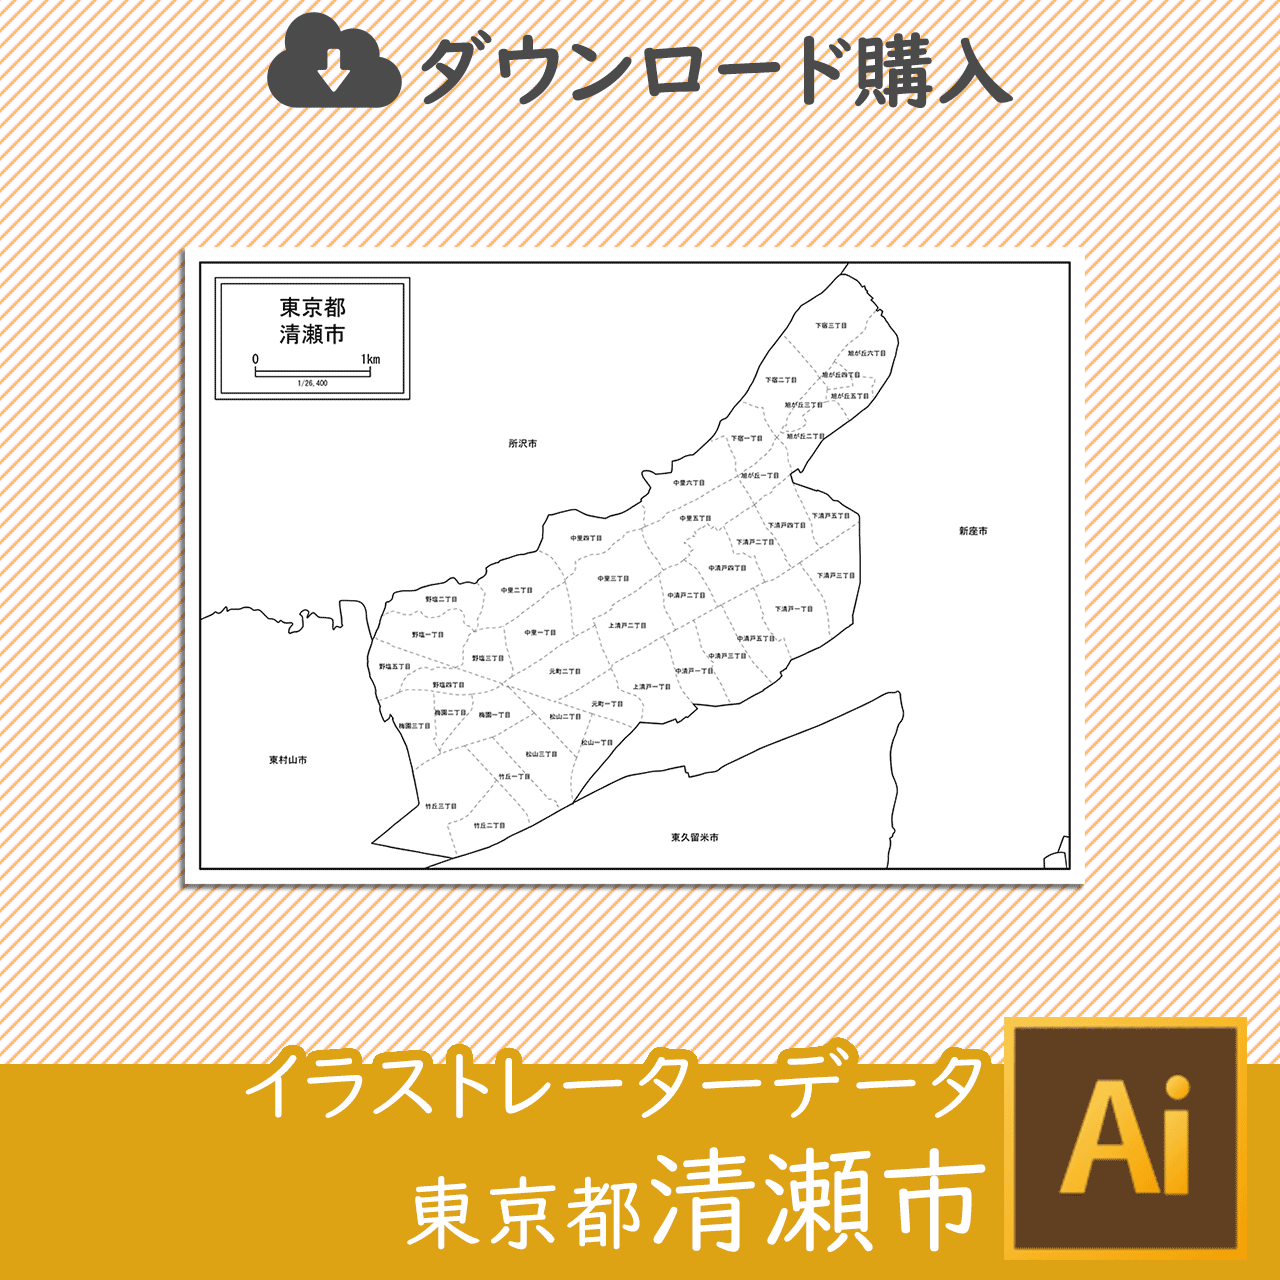 清瀬市のaiデータのサムネイル画像